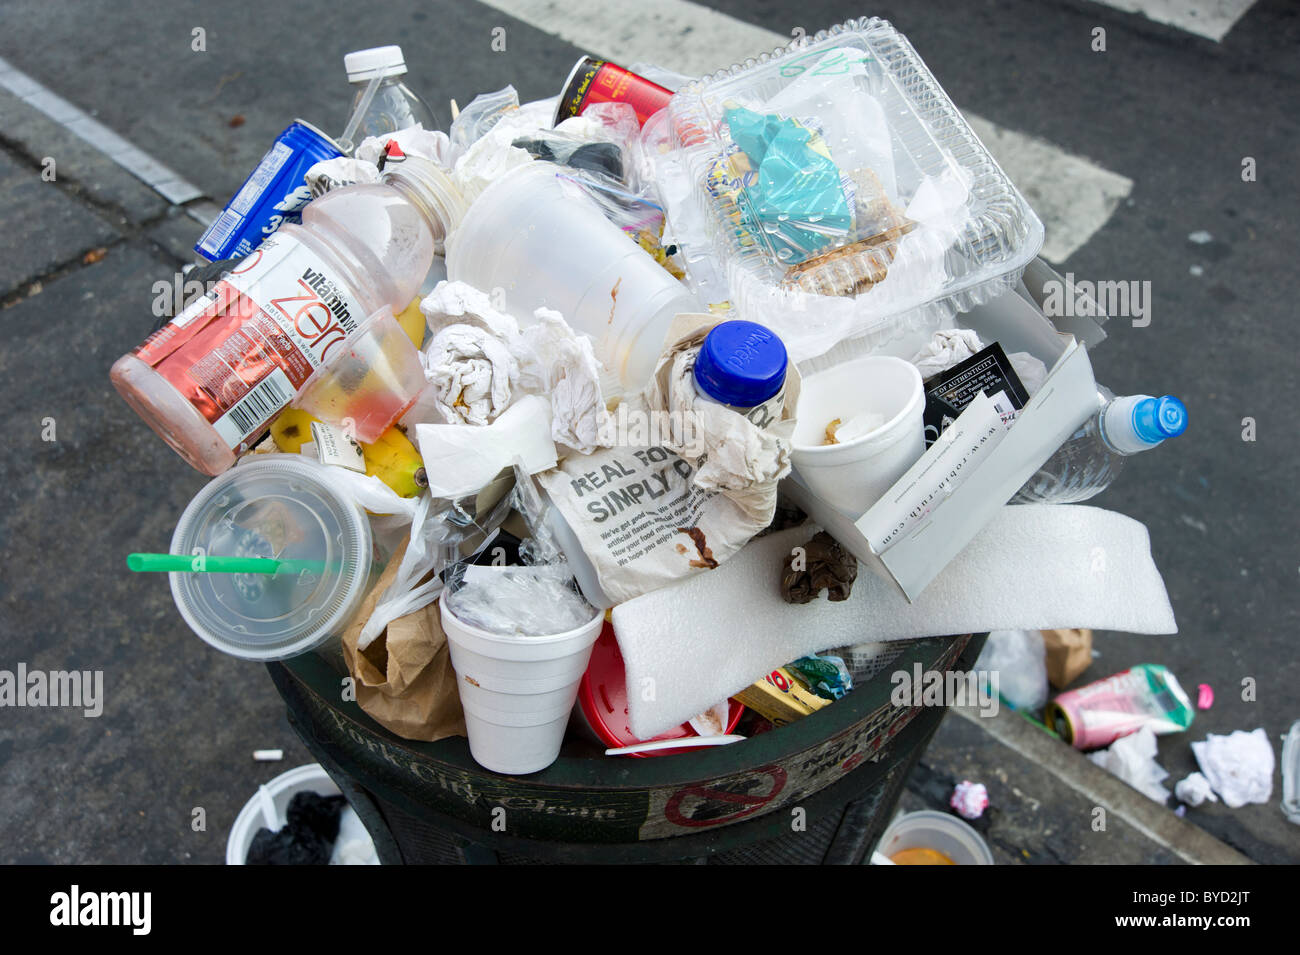 Traboccante spazzatura, New York City, Stati Uniti d'America Foto Stock